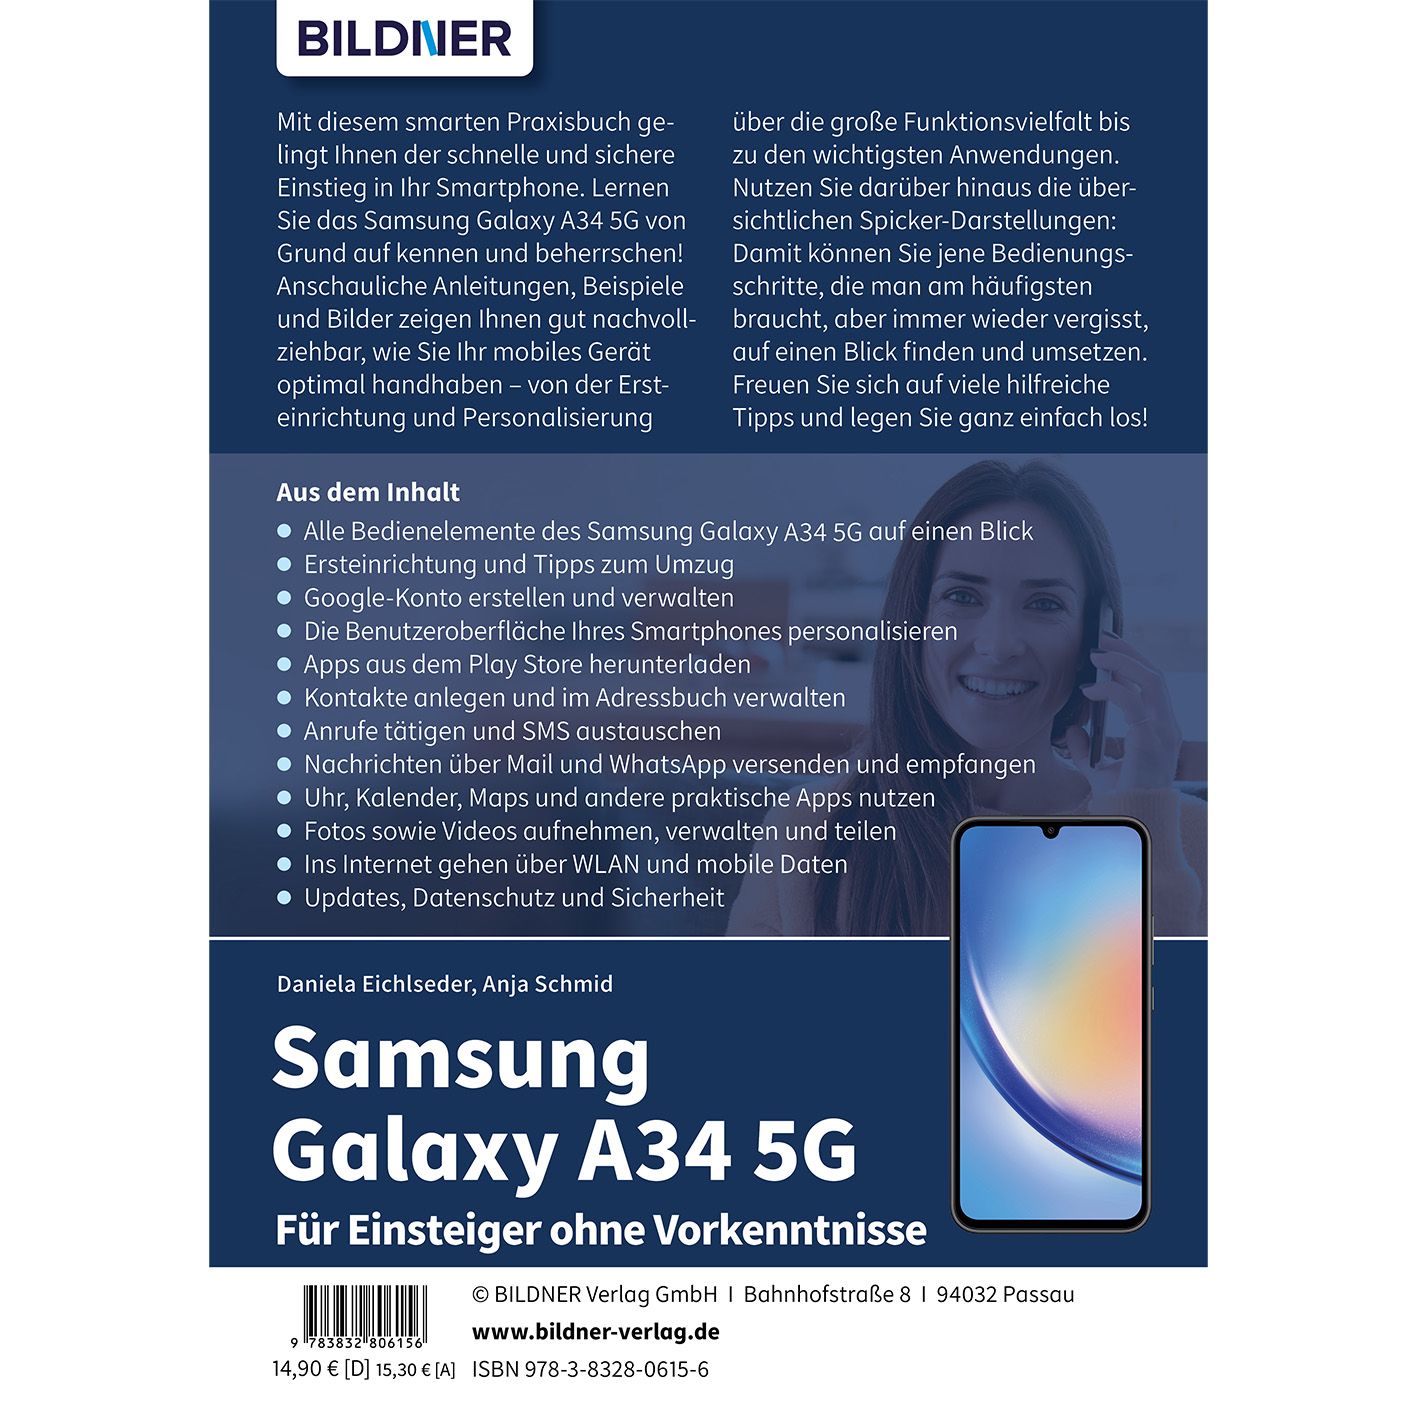 Samsung Galaxy A34 5G Vorkenntnisse Für ohne - Einsteiger